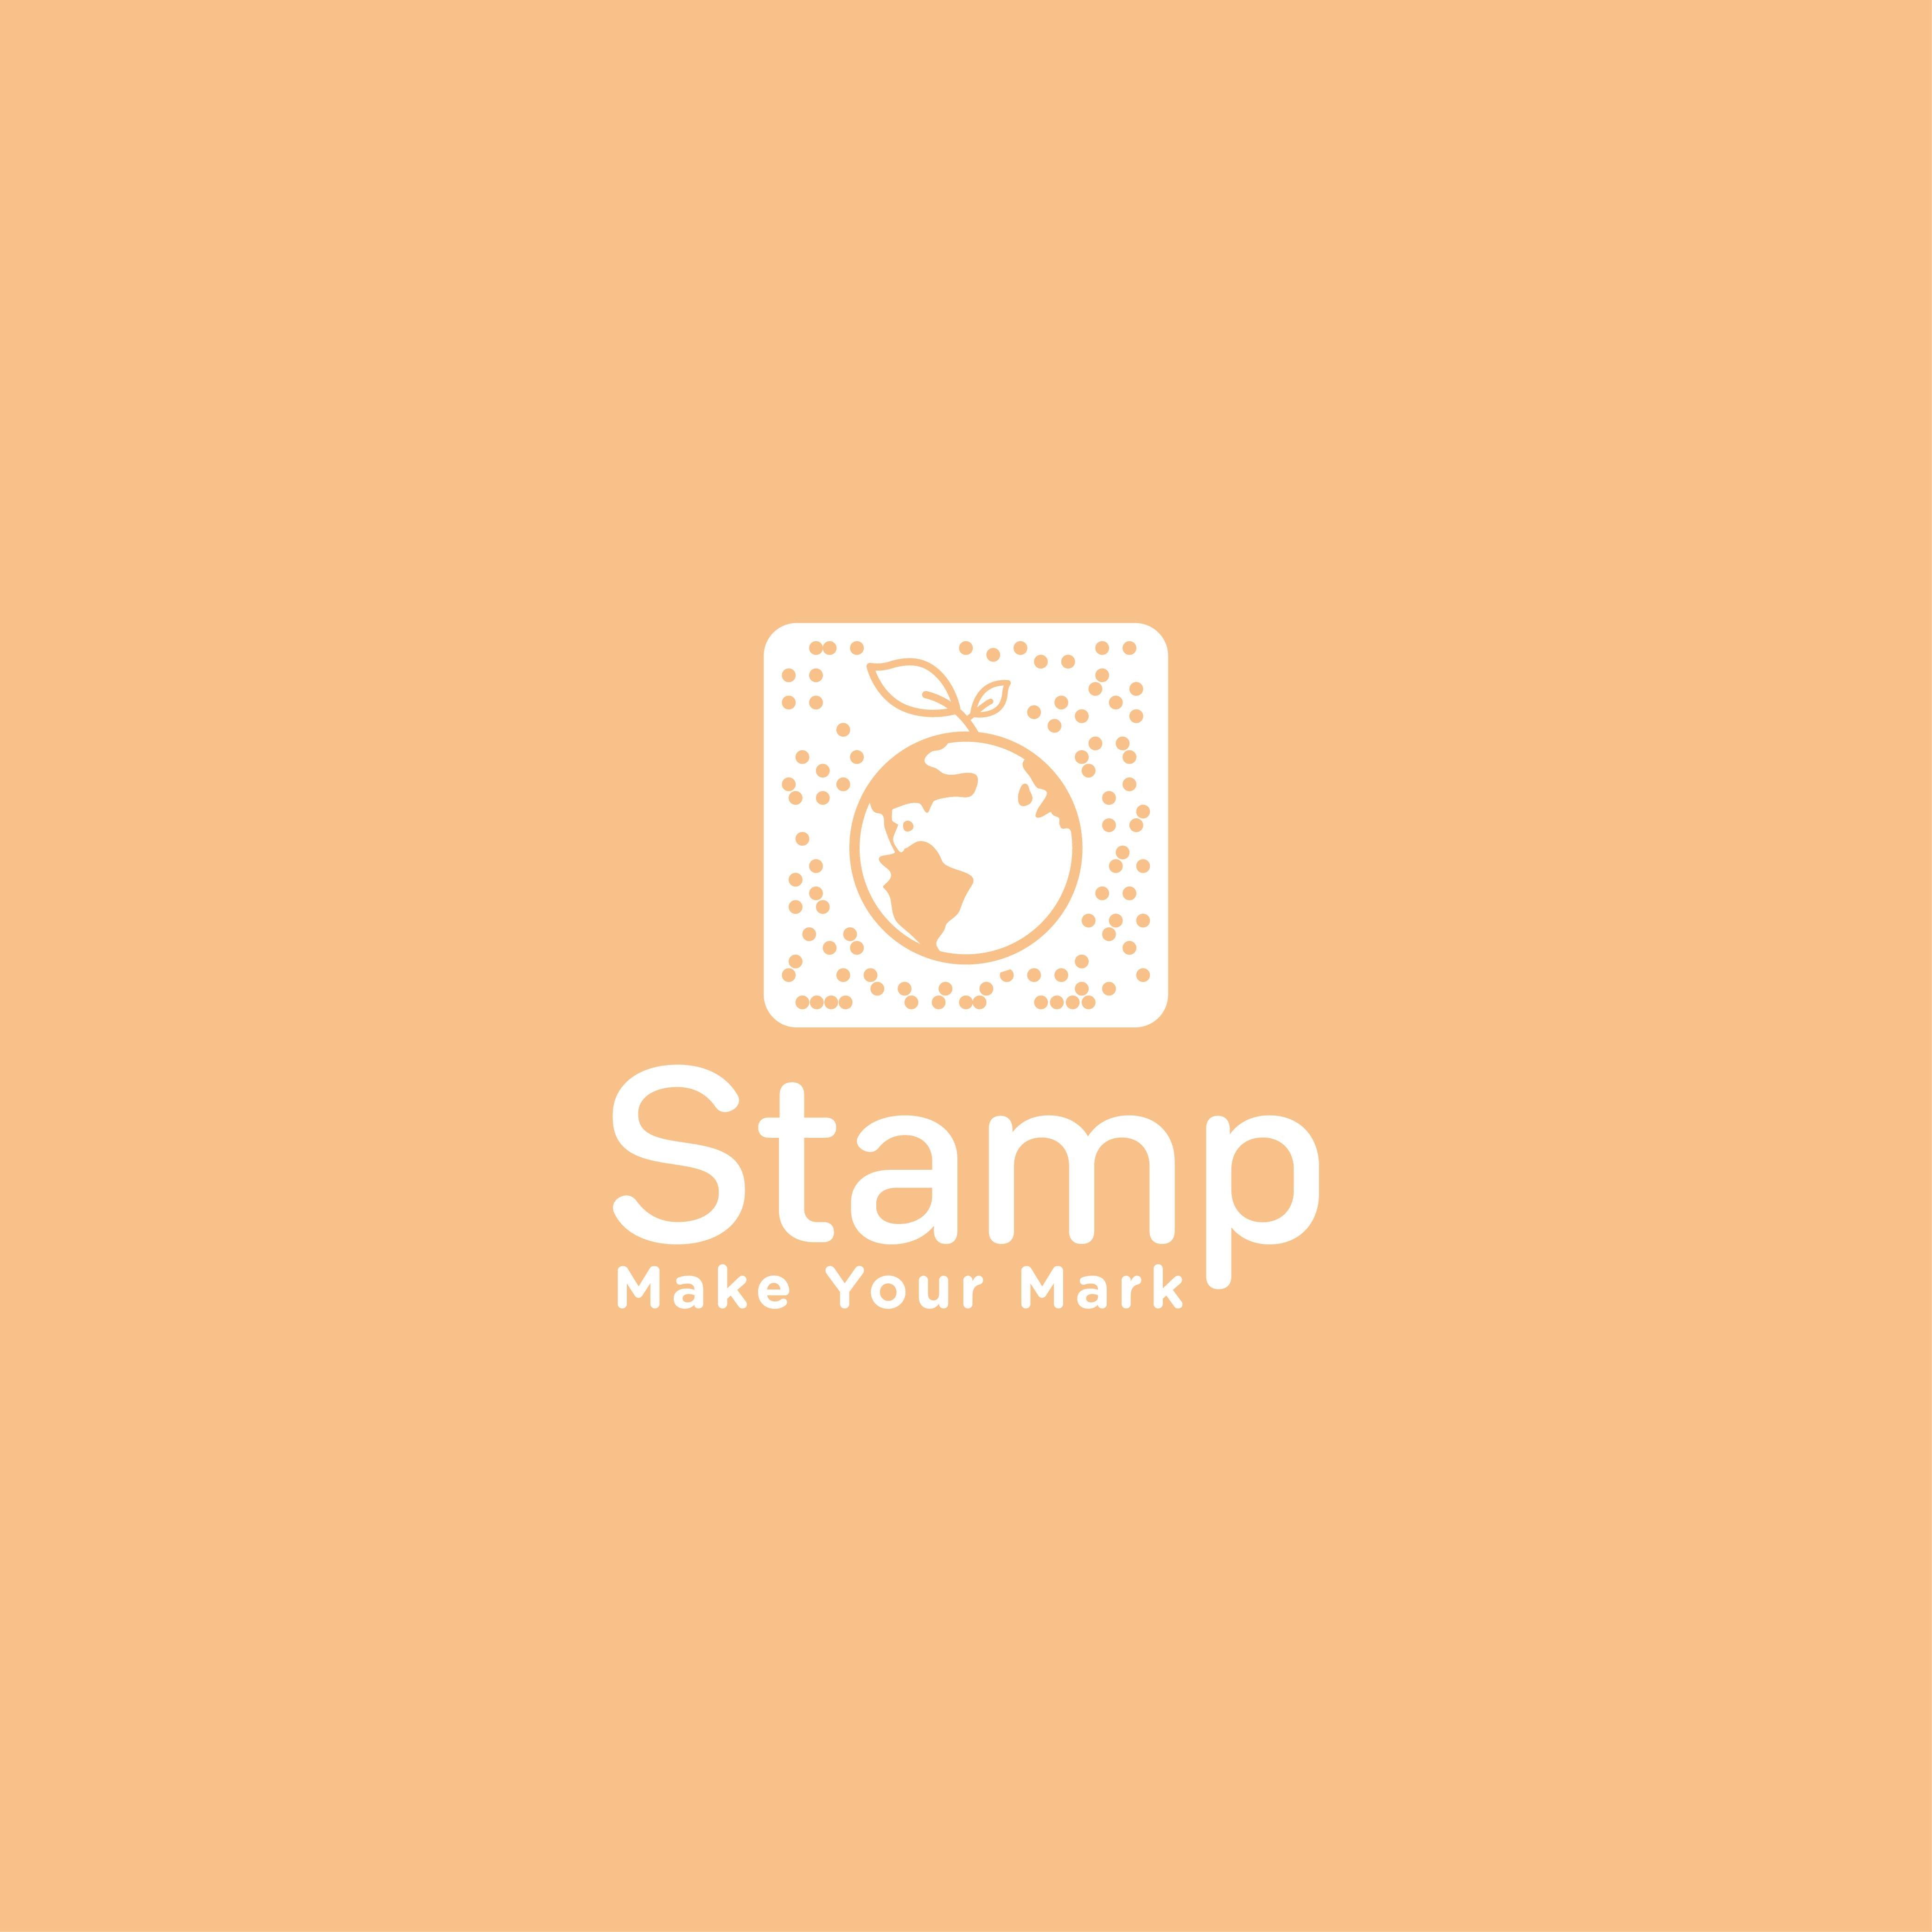 Stamp logo